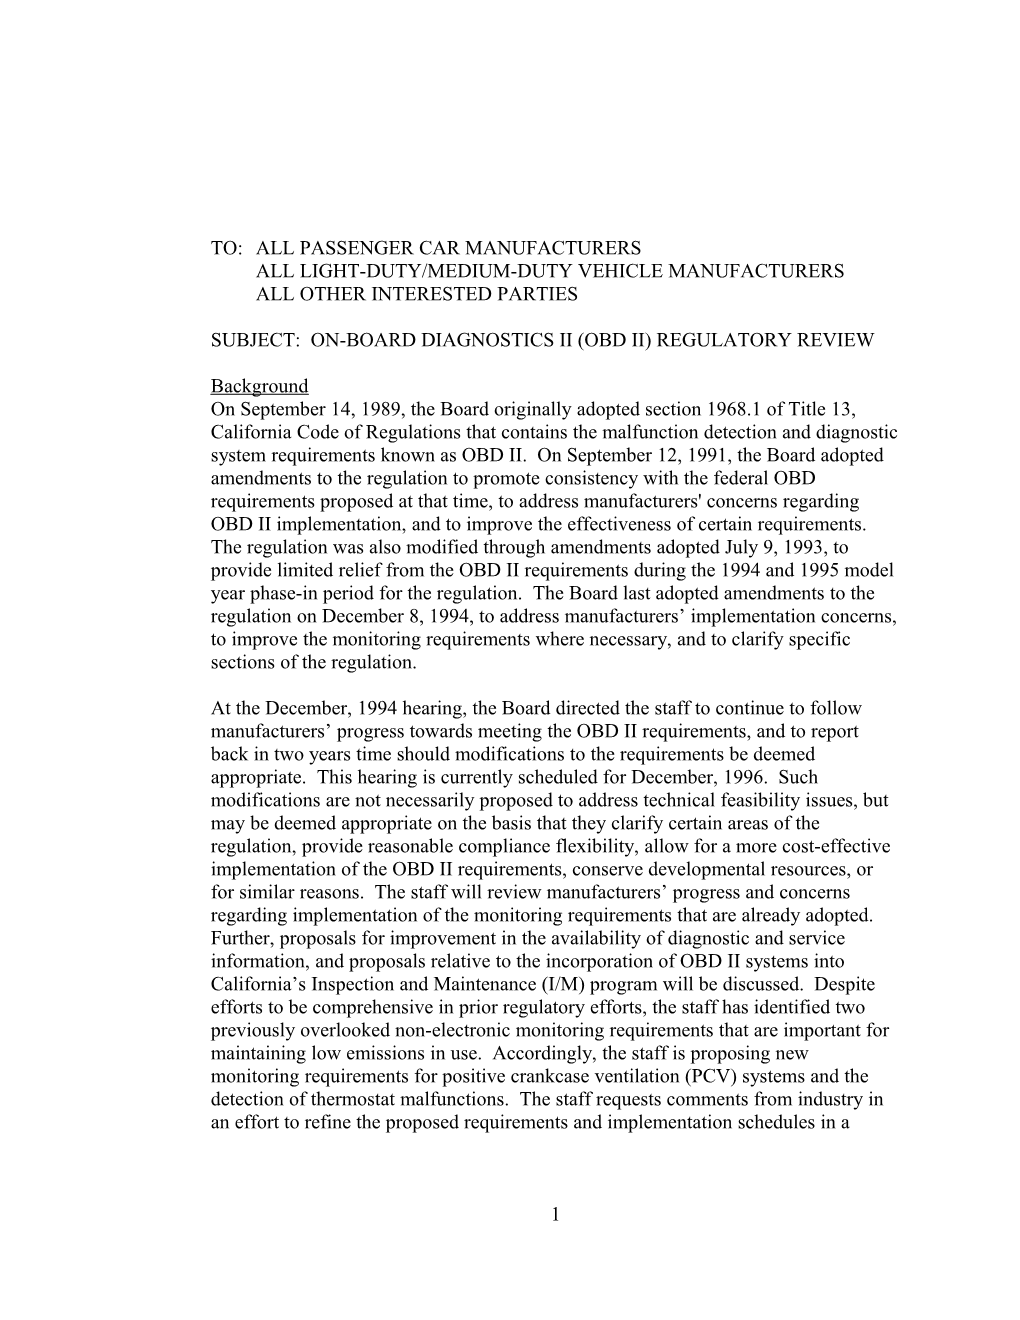 Rulemaking Informal: Workshop Notice: 1996-07-24 On-Board Diagnostics II Regulatory Review